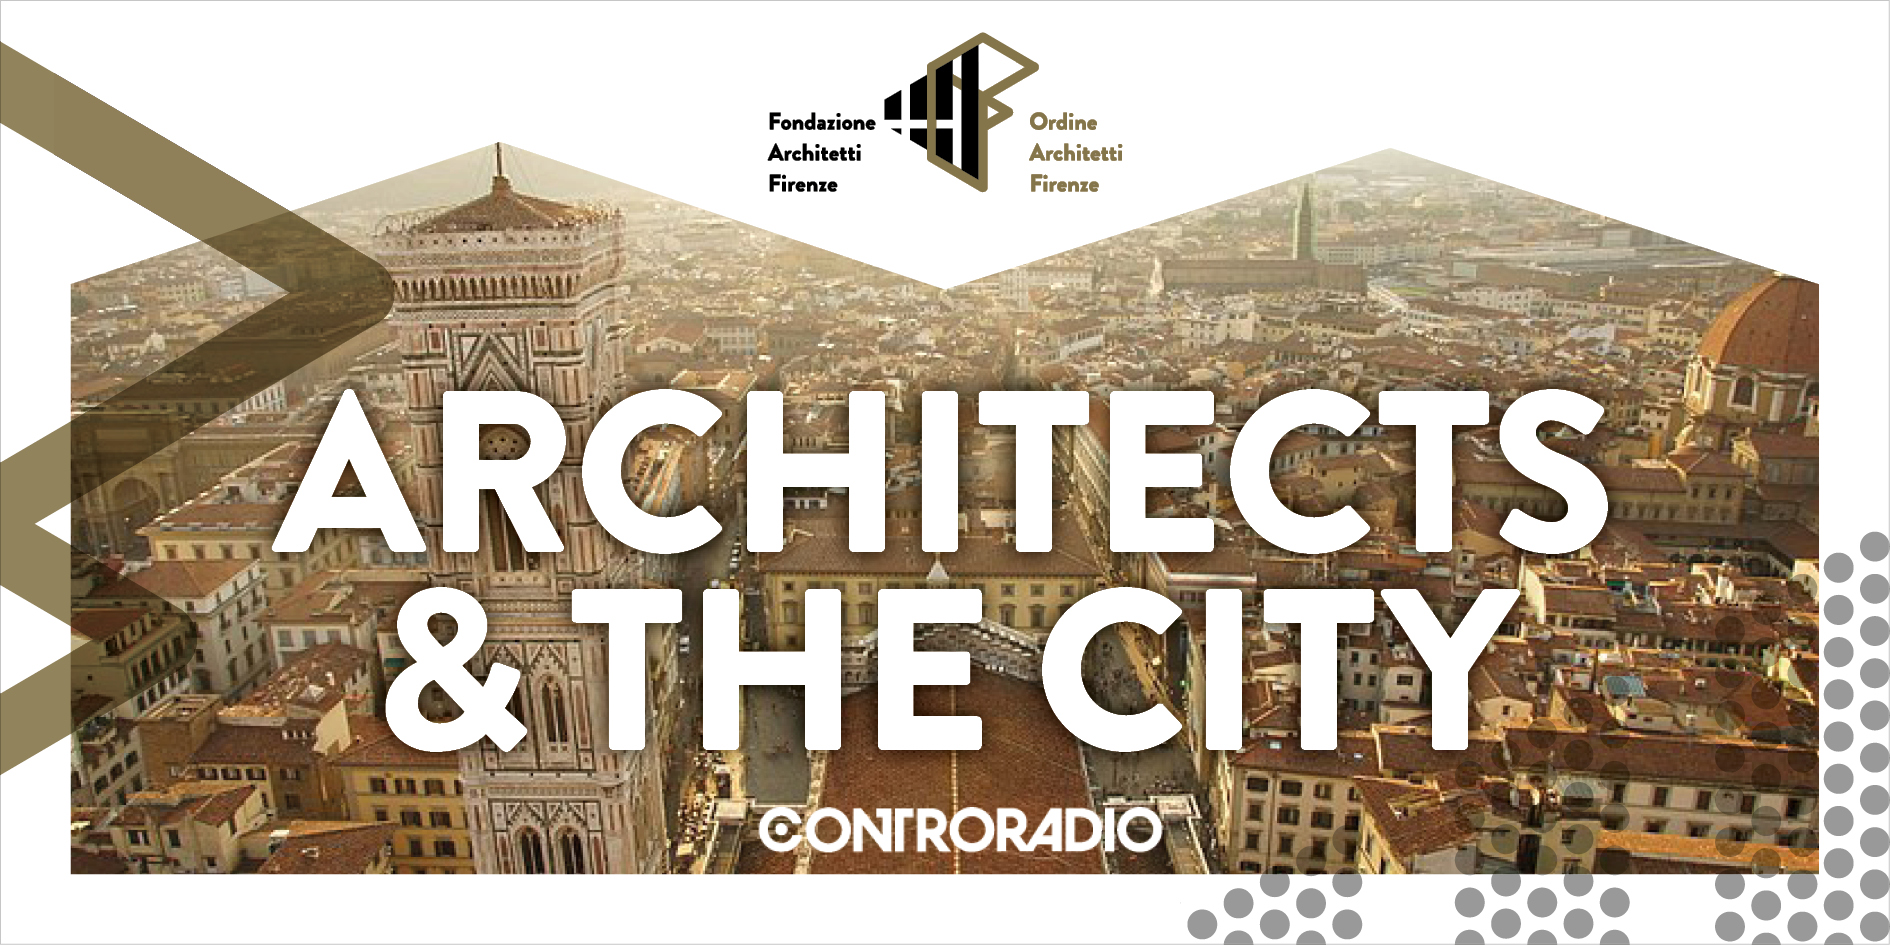 L'agenda dell'Architetto del 18 giugno 2020